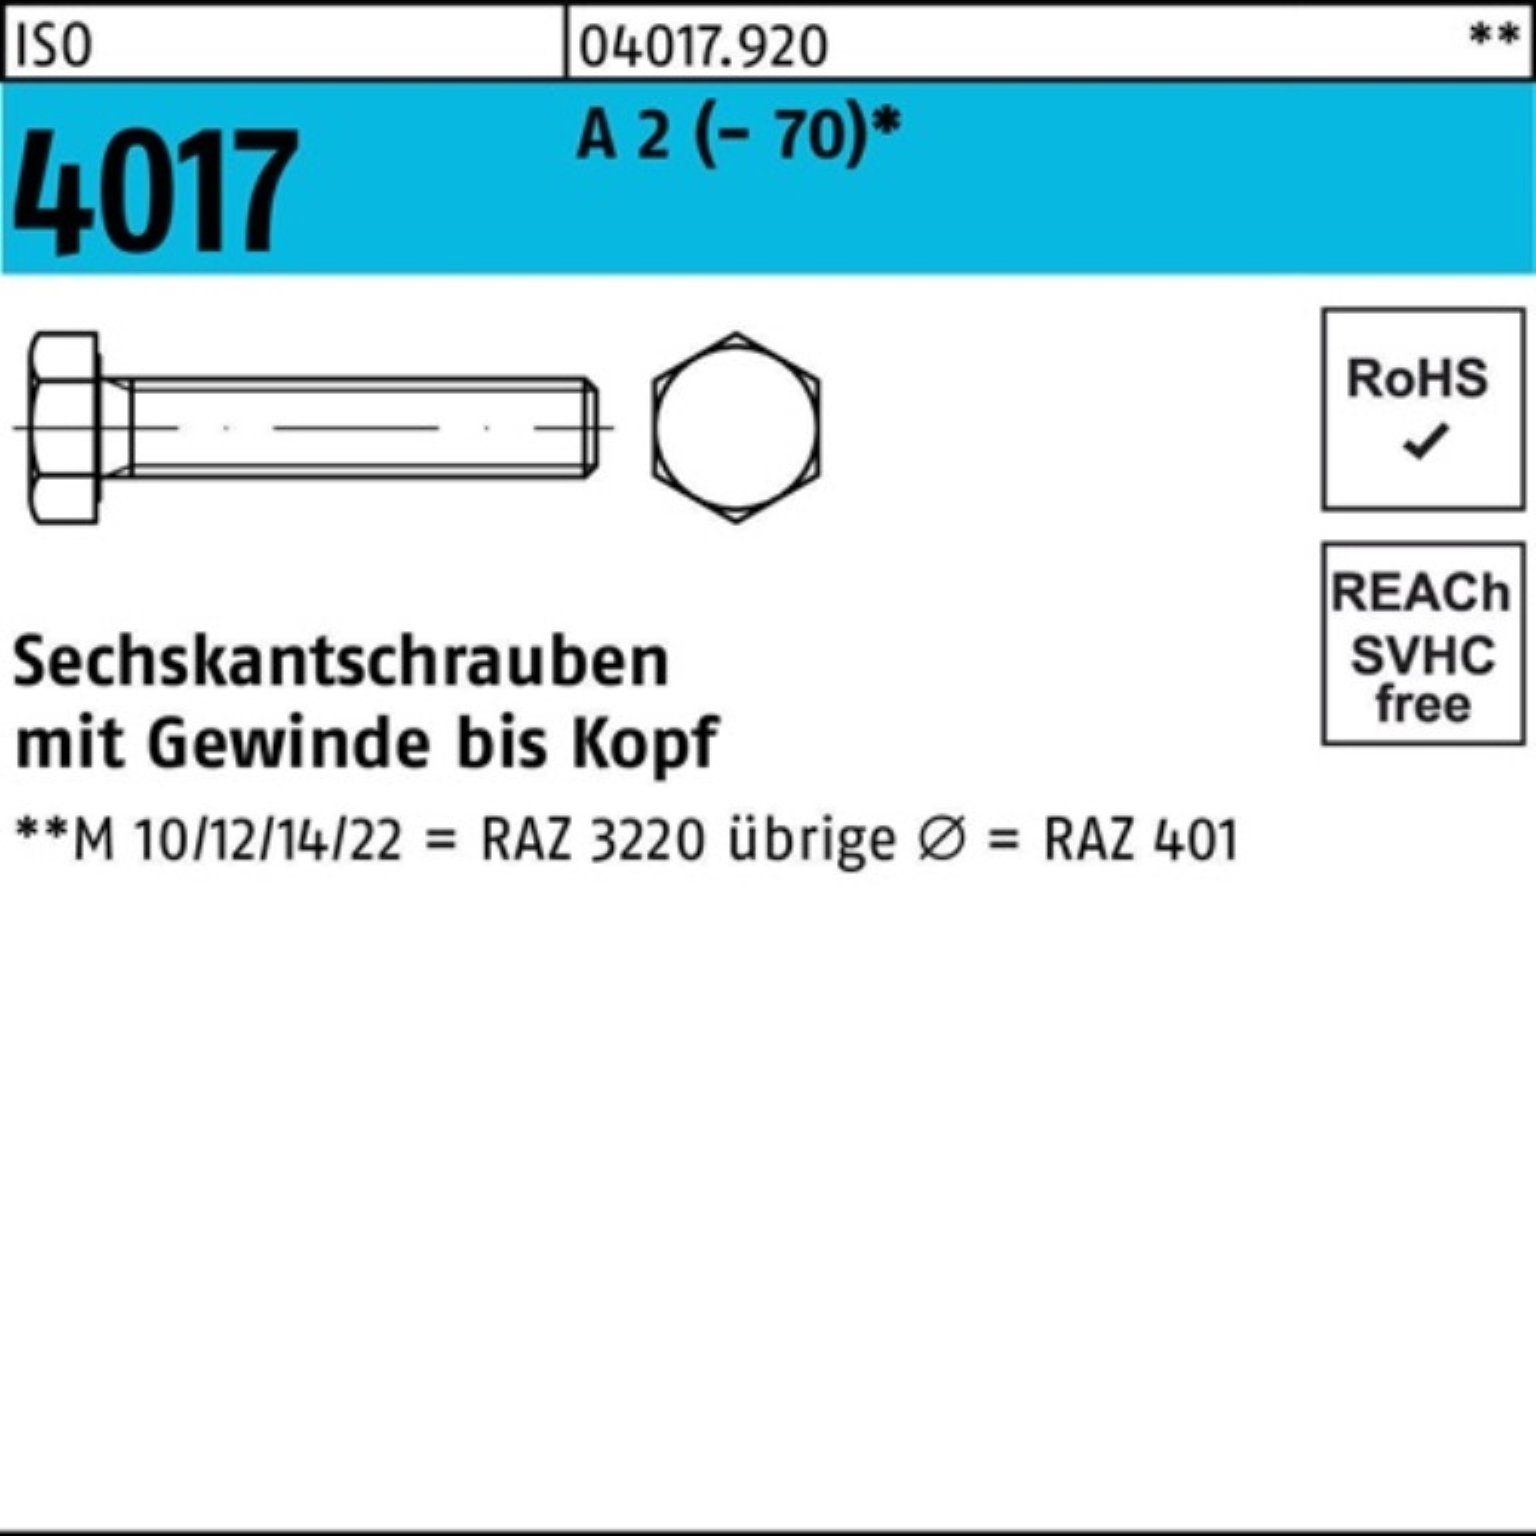 Bufab Sechskantschraube 100er Pack Sechskantschraube ISO 4017 VG M10x 10 A 2 (70) 100 Stück